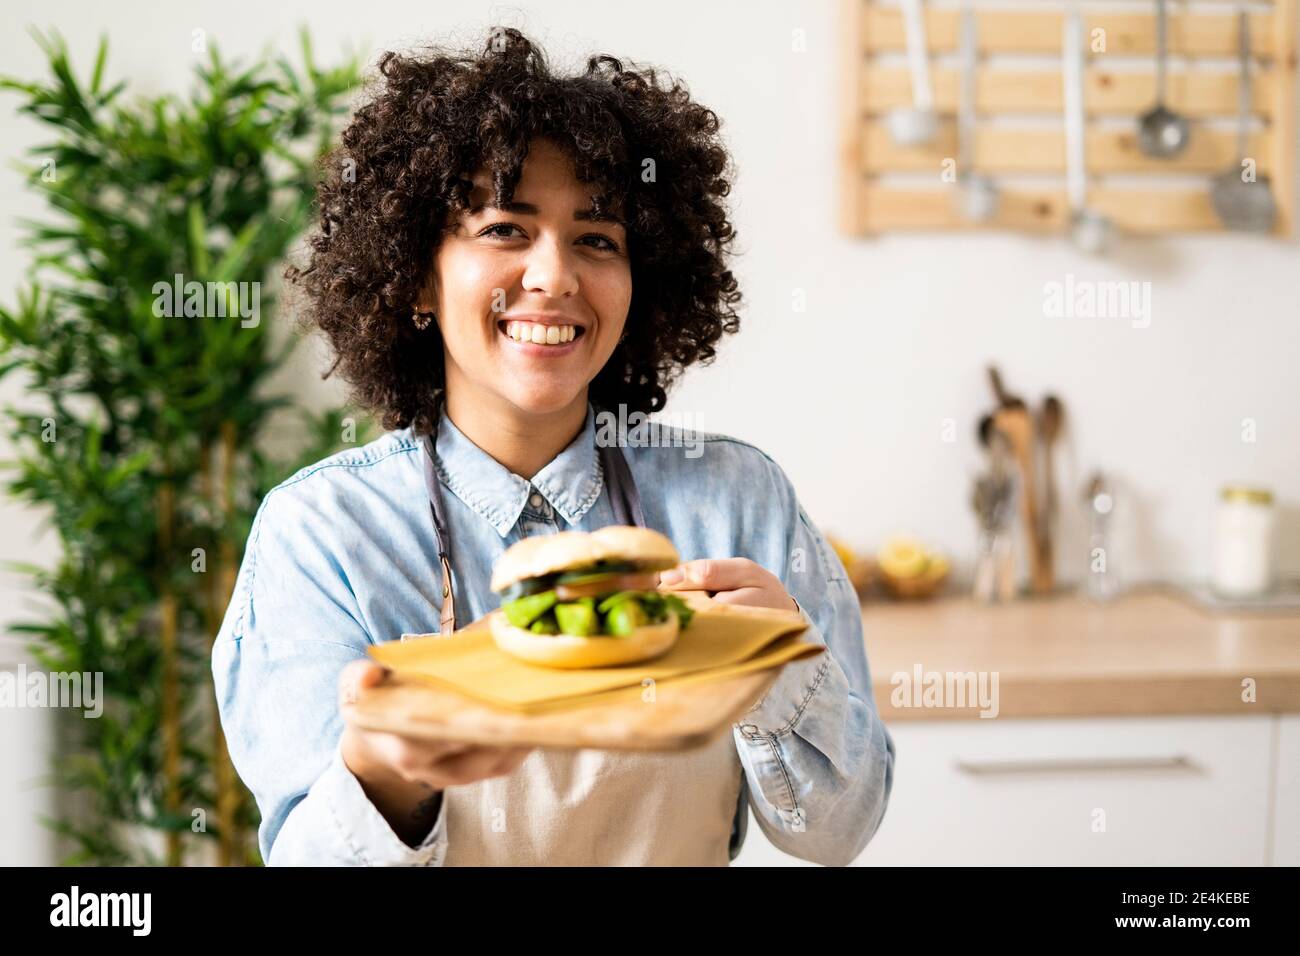 Ritratto di giovane donna che tiene fresco panino vegan Foto Stock